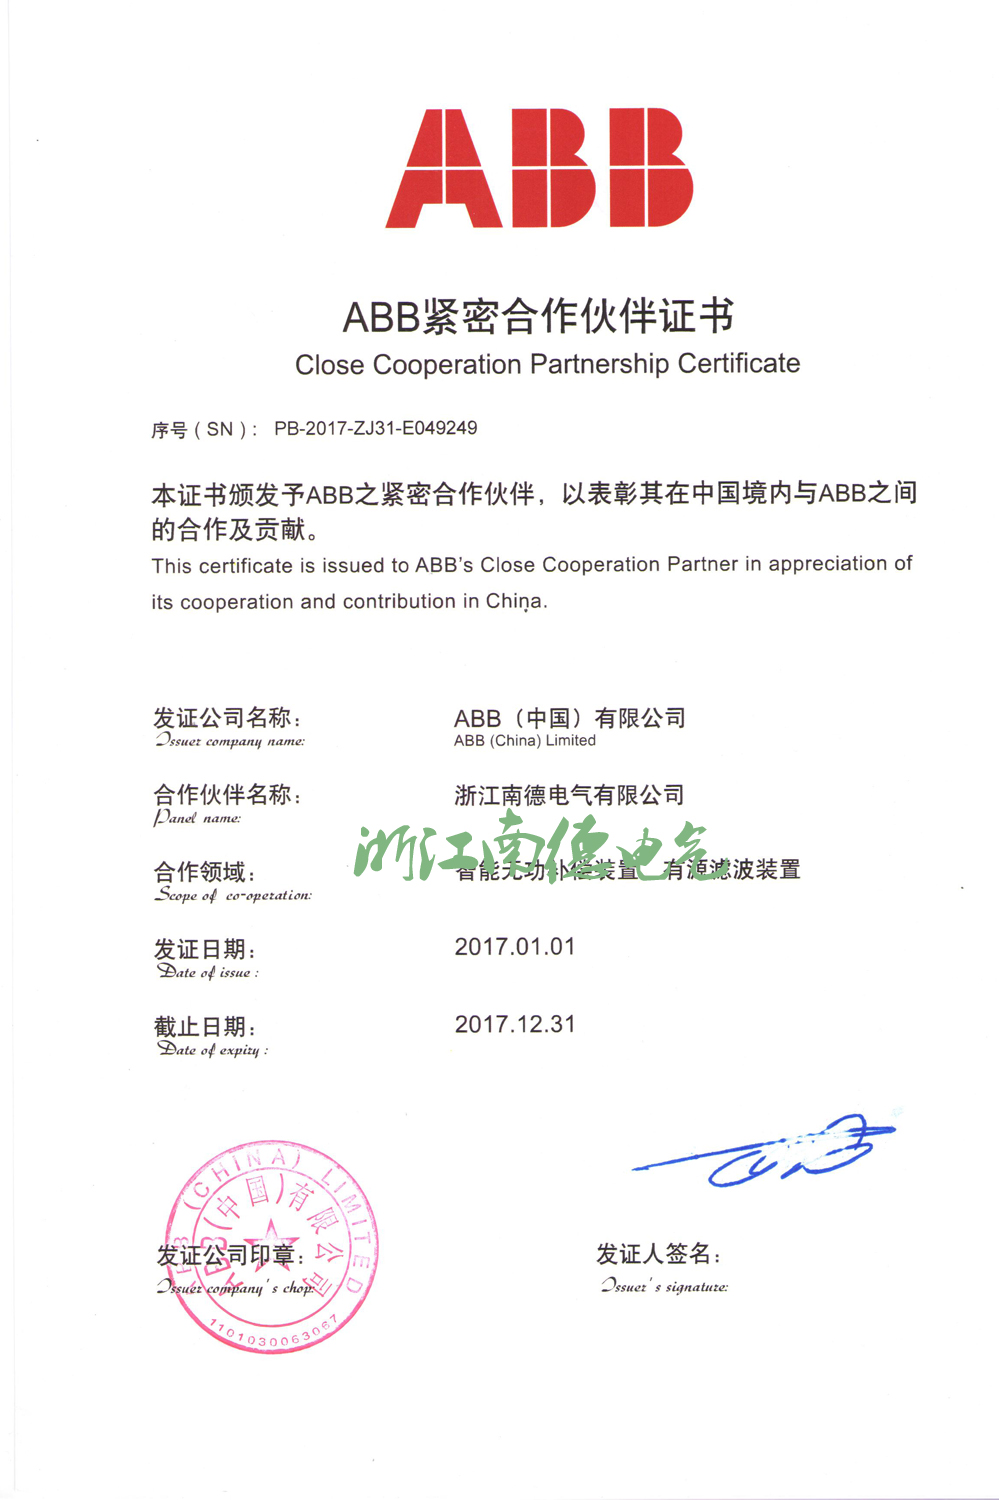 【南德】ABB紧密合作伙伴证书2017